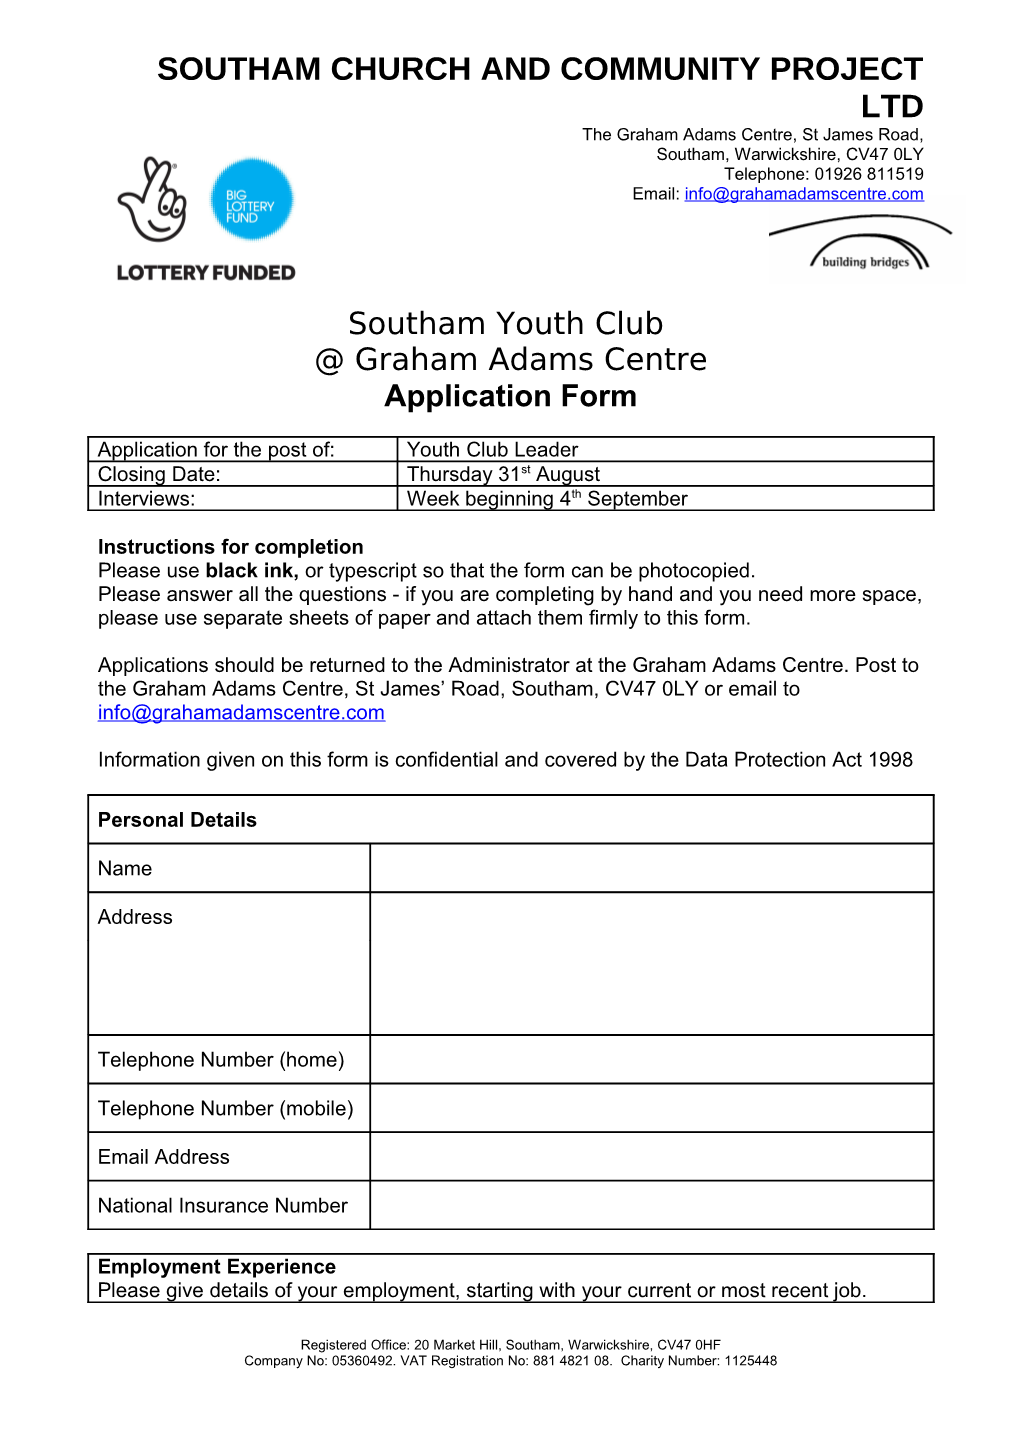 Southam Youth Club